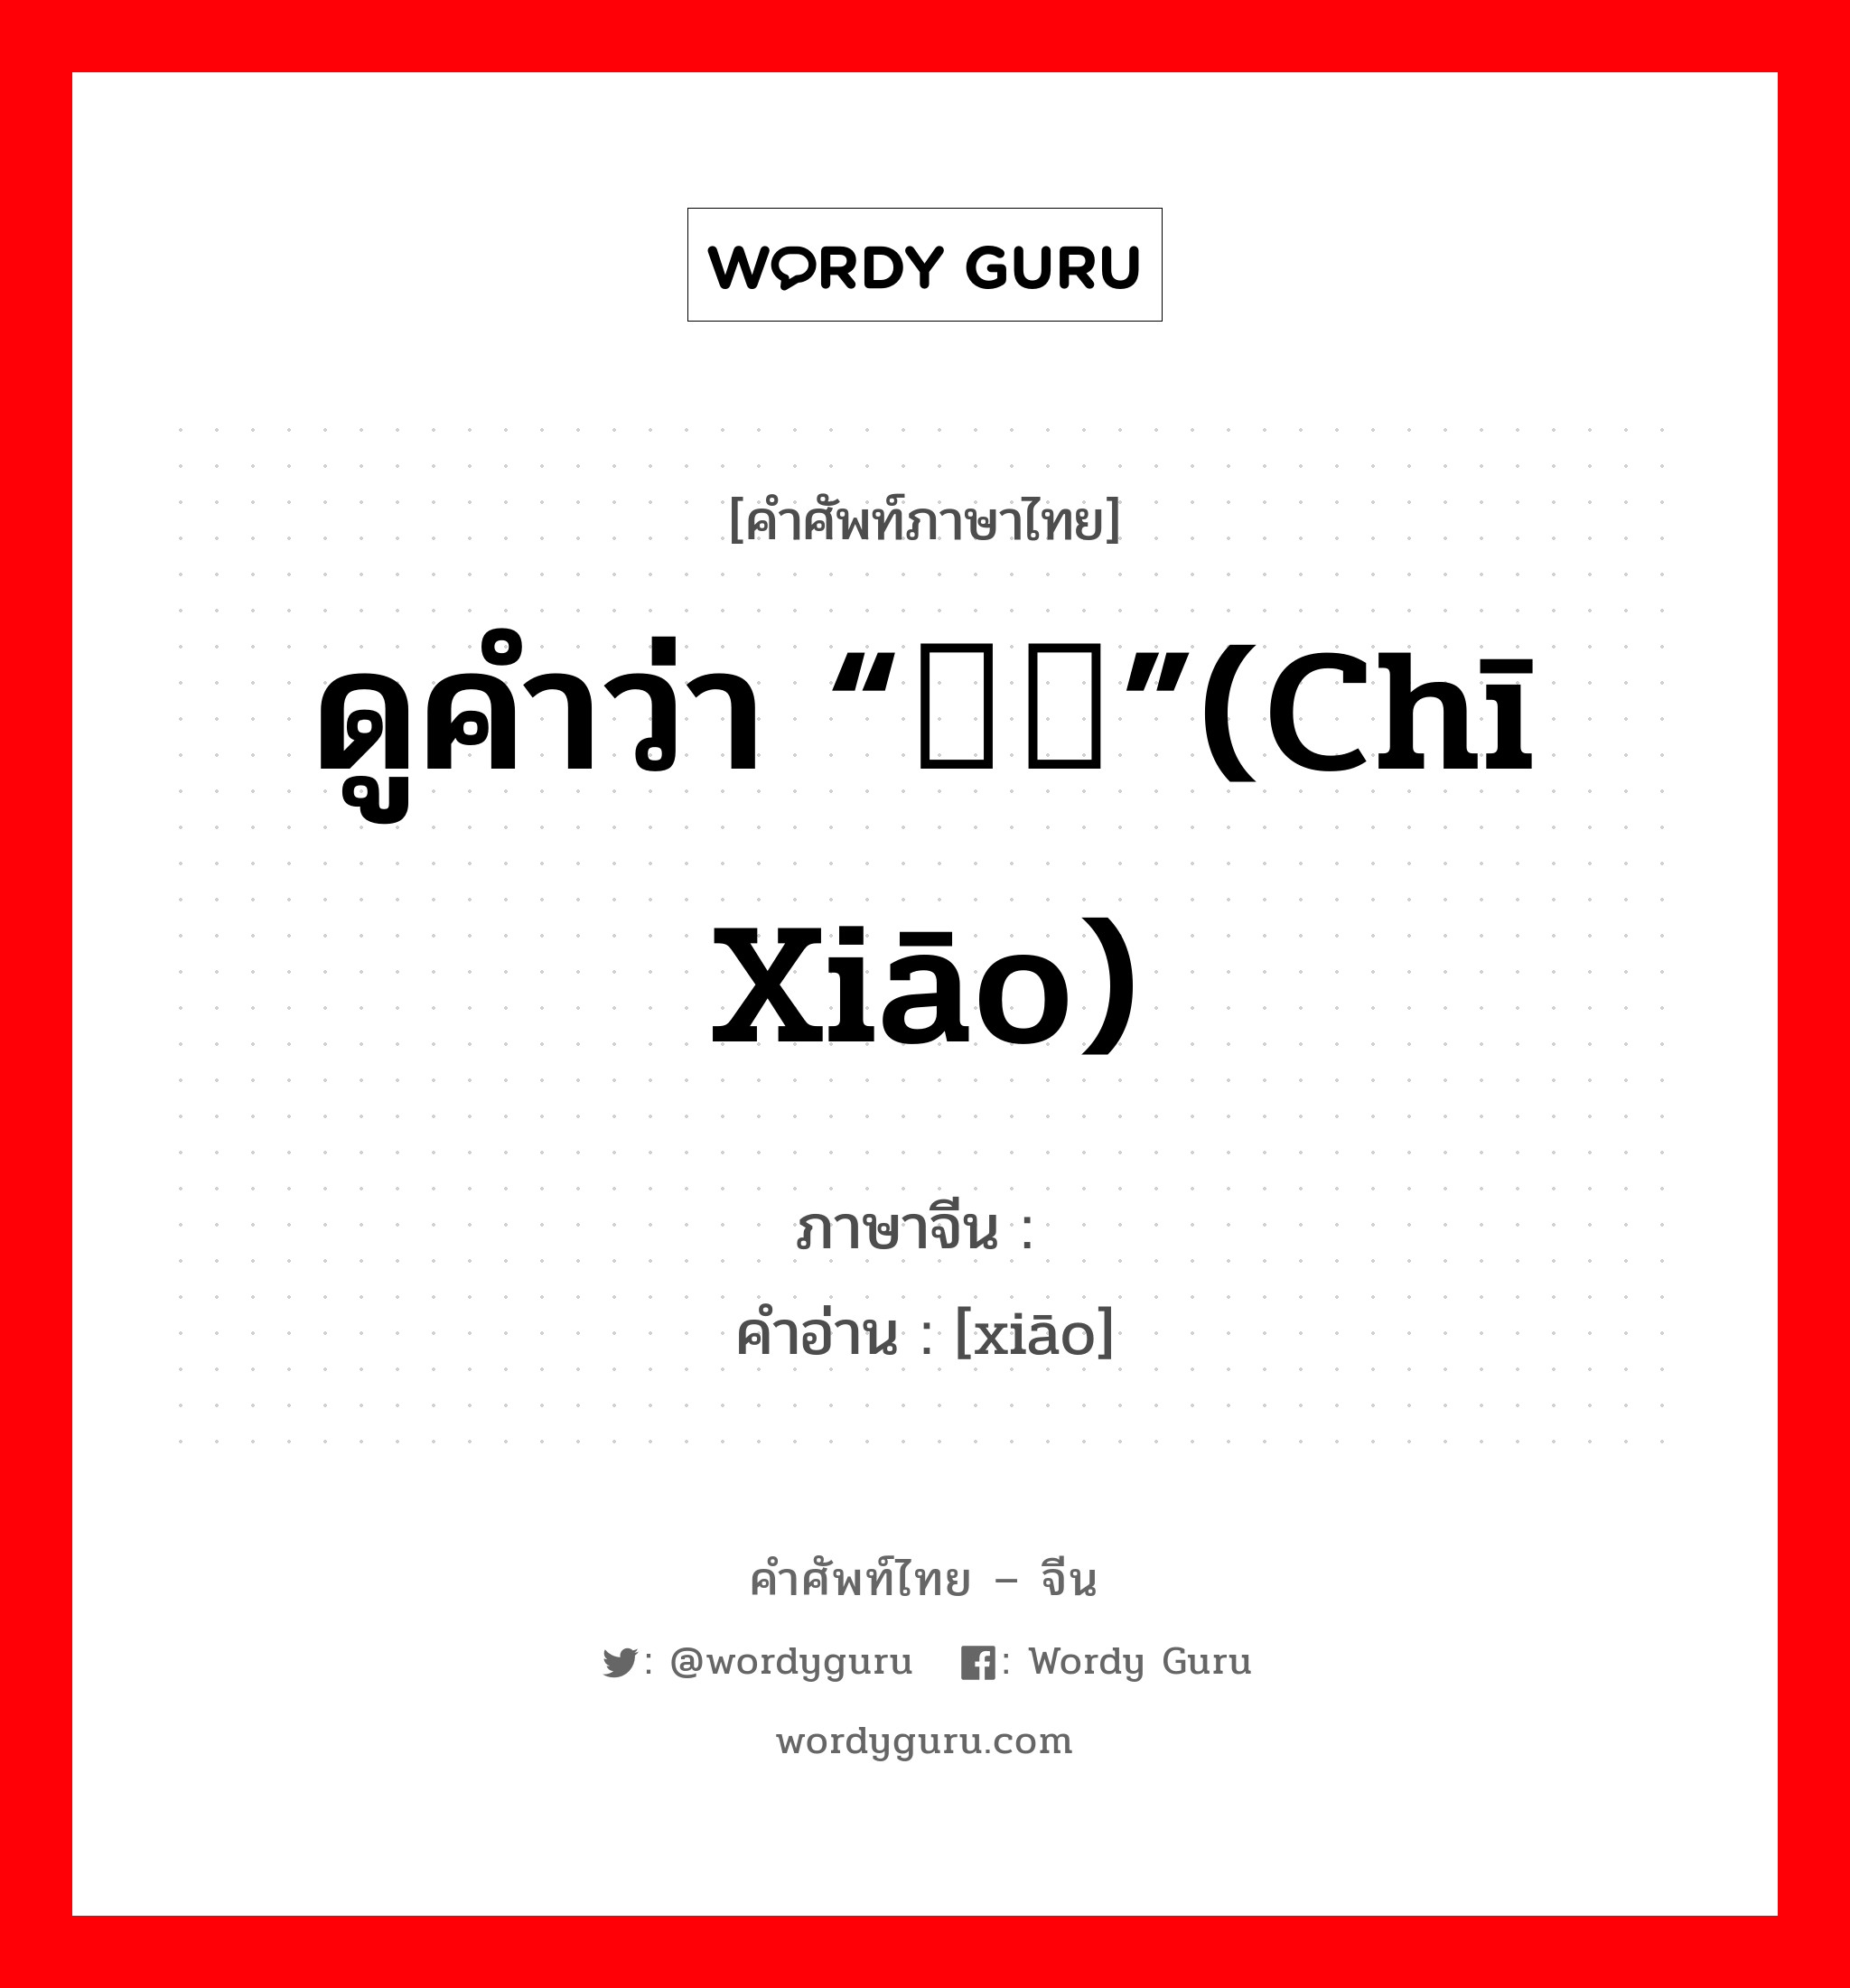 ดูคำว่า “鸱鸮”(chī xiāo) ภาษาจีนคืออะไร, คำศัพท์ภาษาไทย - จีน ดูคำว่า “鸱鸮”(chī xiāo) ภาษาจีน 鸮 คำอ่าน [xiāo]